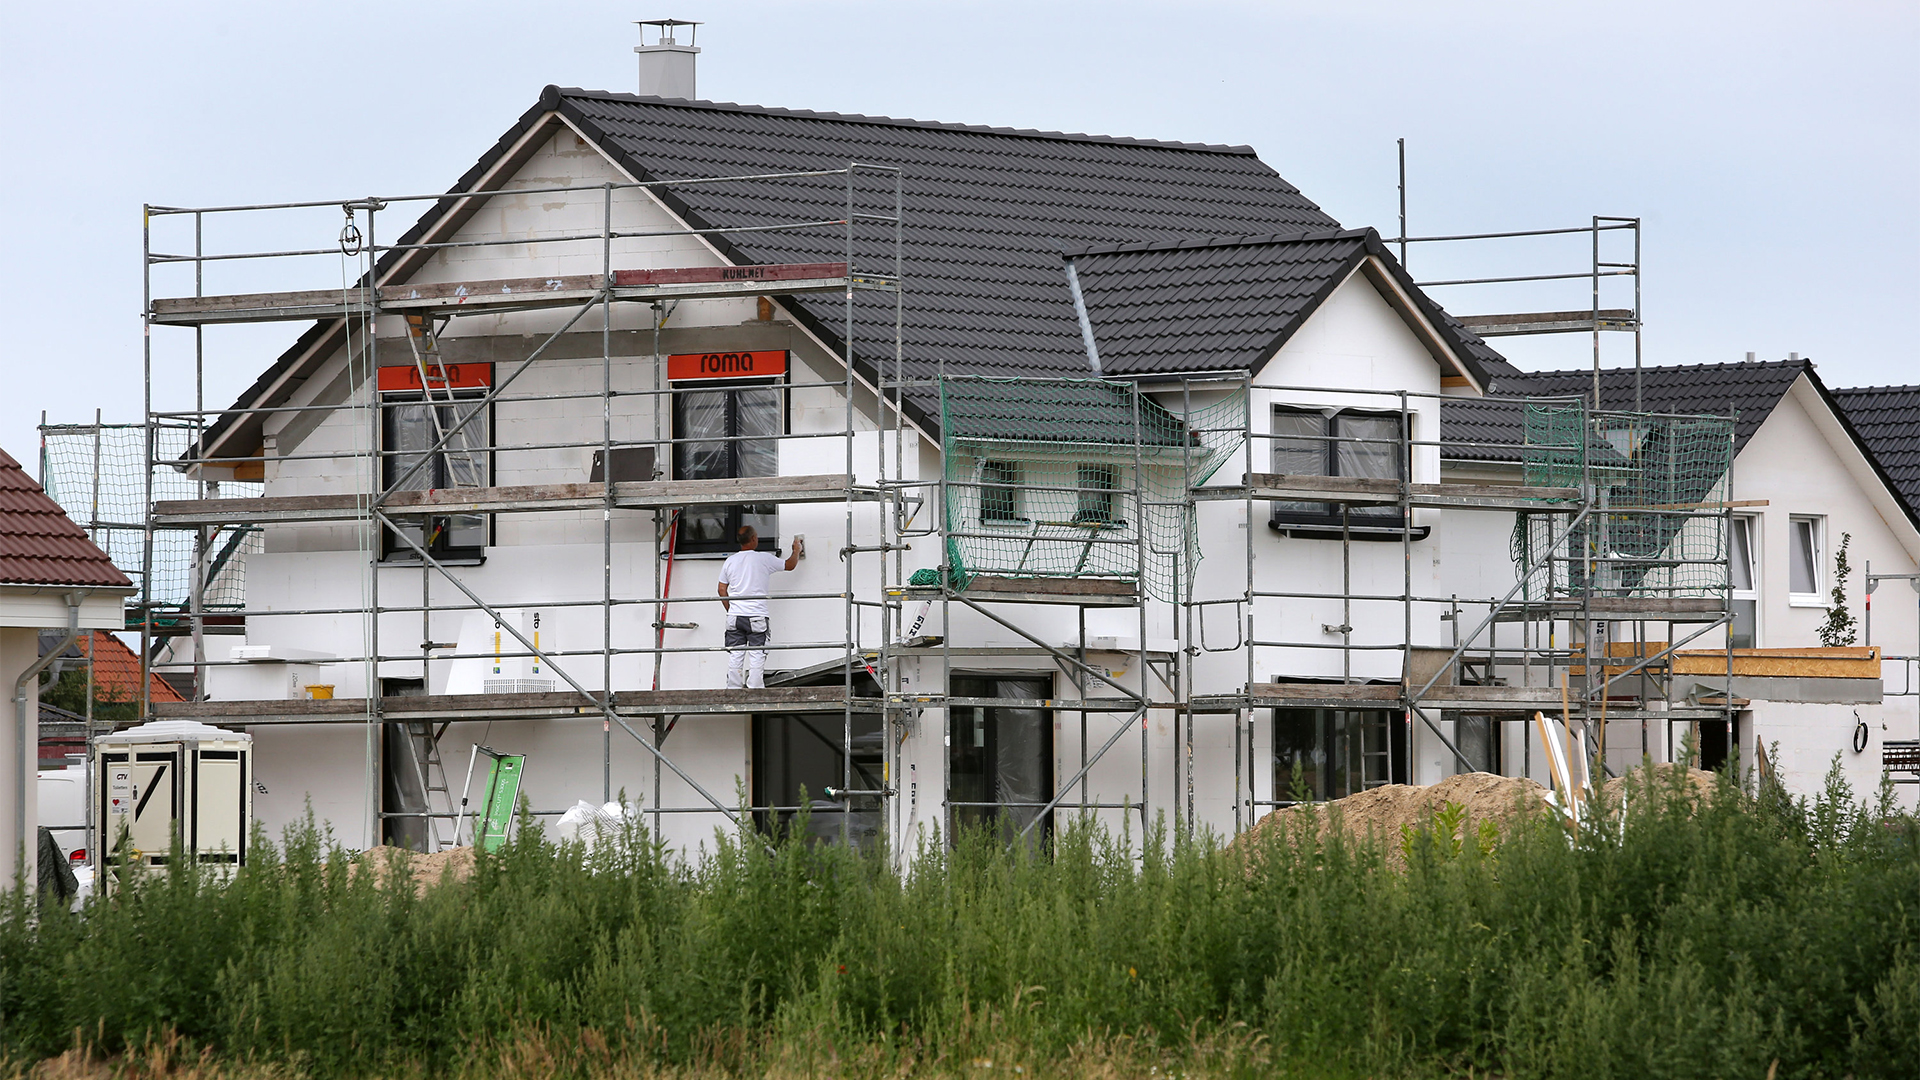 Bauarbeiter arbeiten an der  Fertigstellung von Einfamilienhäusern | dpa